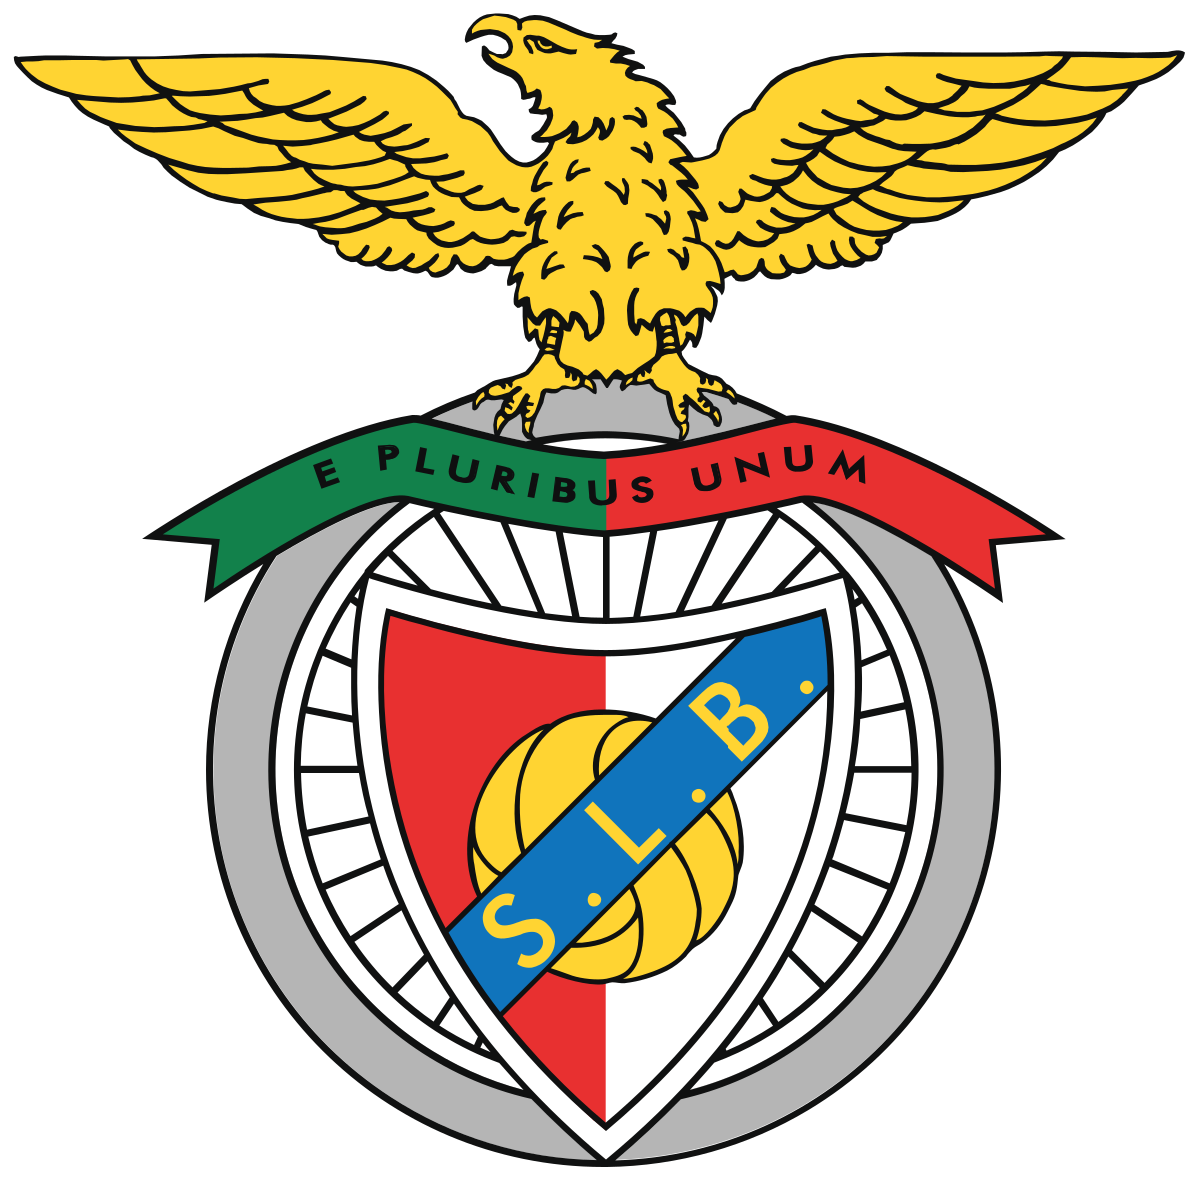 Basquetebol: Benfica é campeão com aveirenses em destaque.